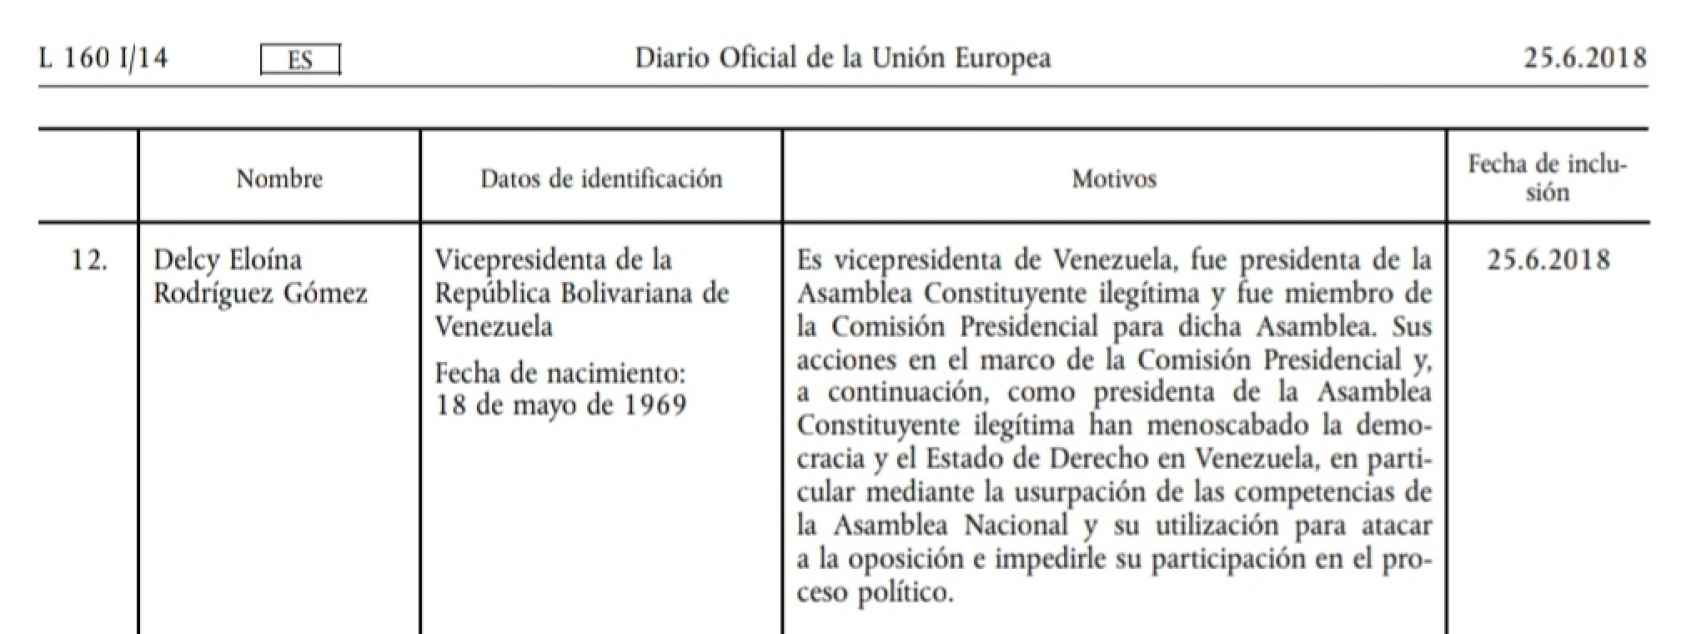 Documento del Consejo Europeo que sanciona a Delcy Rodríguez, vicepresidenta del régimen de Nicolás Maduro en Venezuela.